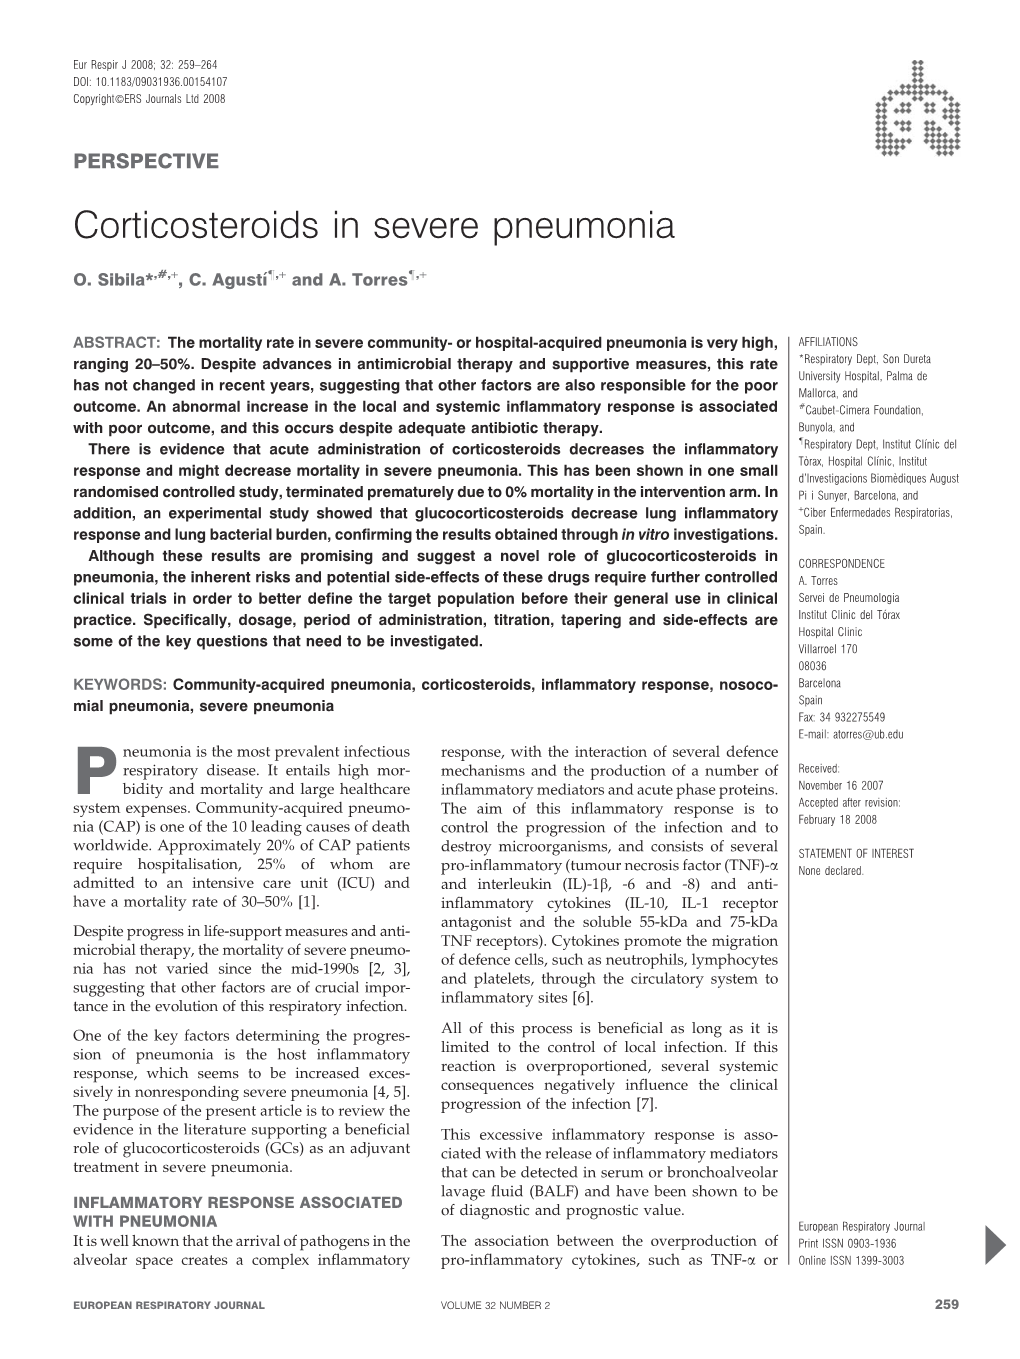 Corticosteroids in Severe Pneumonia